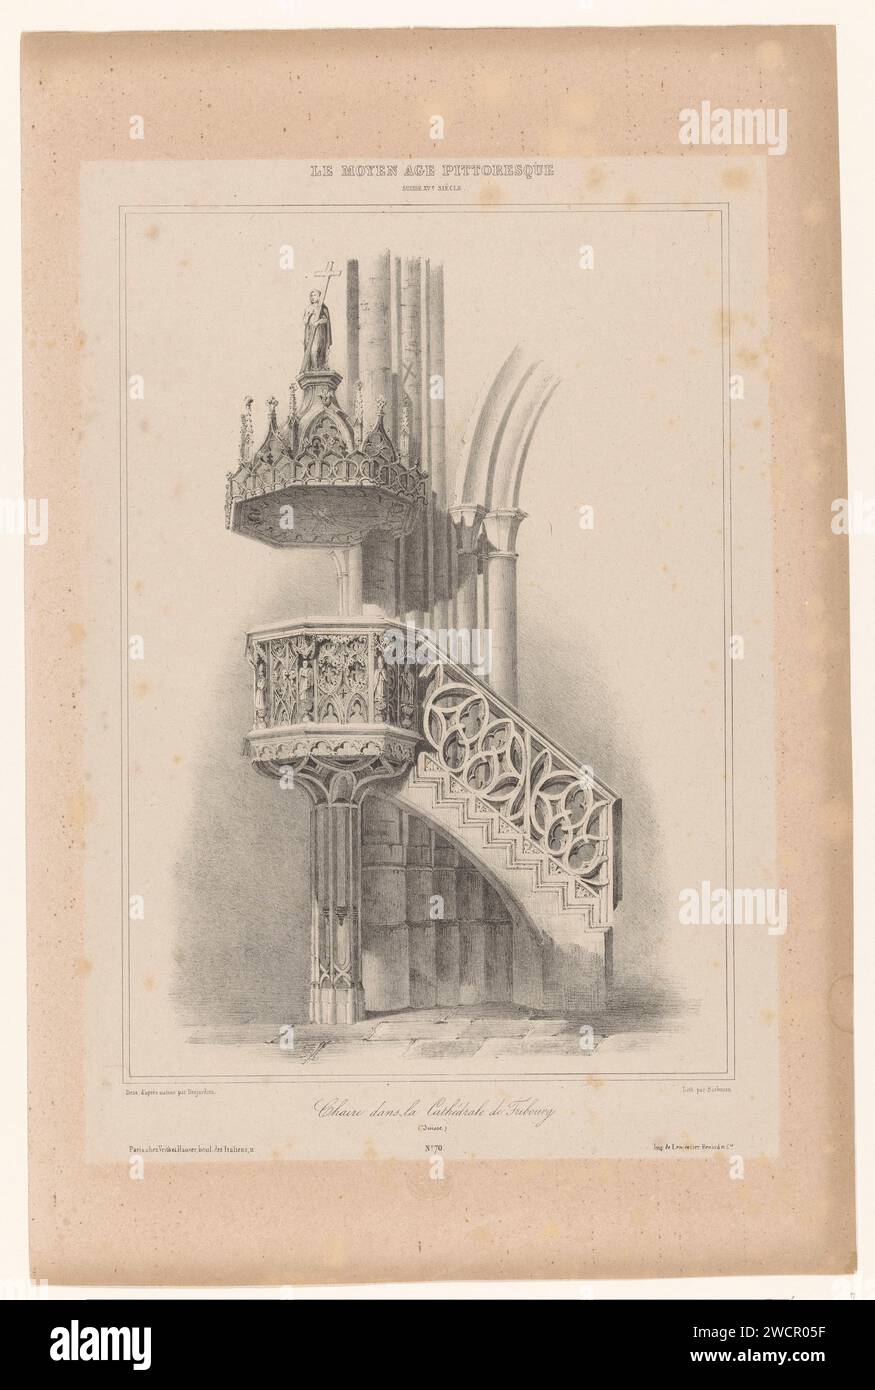 Kanzel in der Kathedrale von Freiburg in der Schweiz, John Bachmann, nach Louis-Joseph Isnard Desjardins, 1837 Druck Paris Papier. Kanzel, Ambo, Kanzel Freiburg Stockfoto